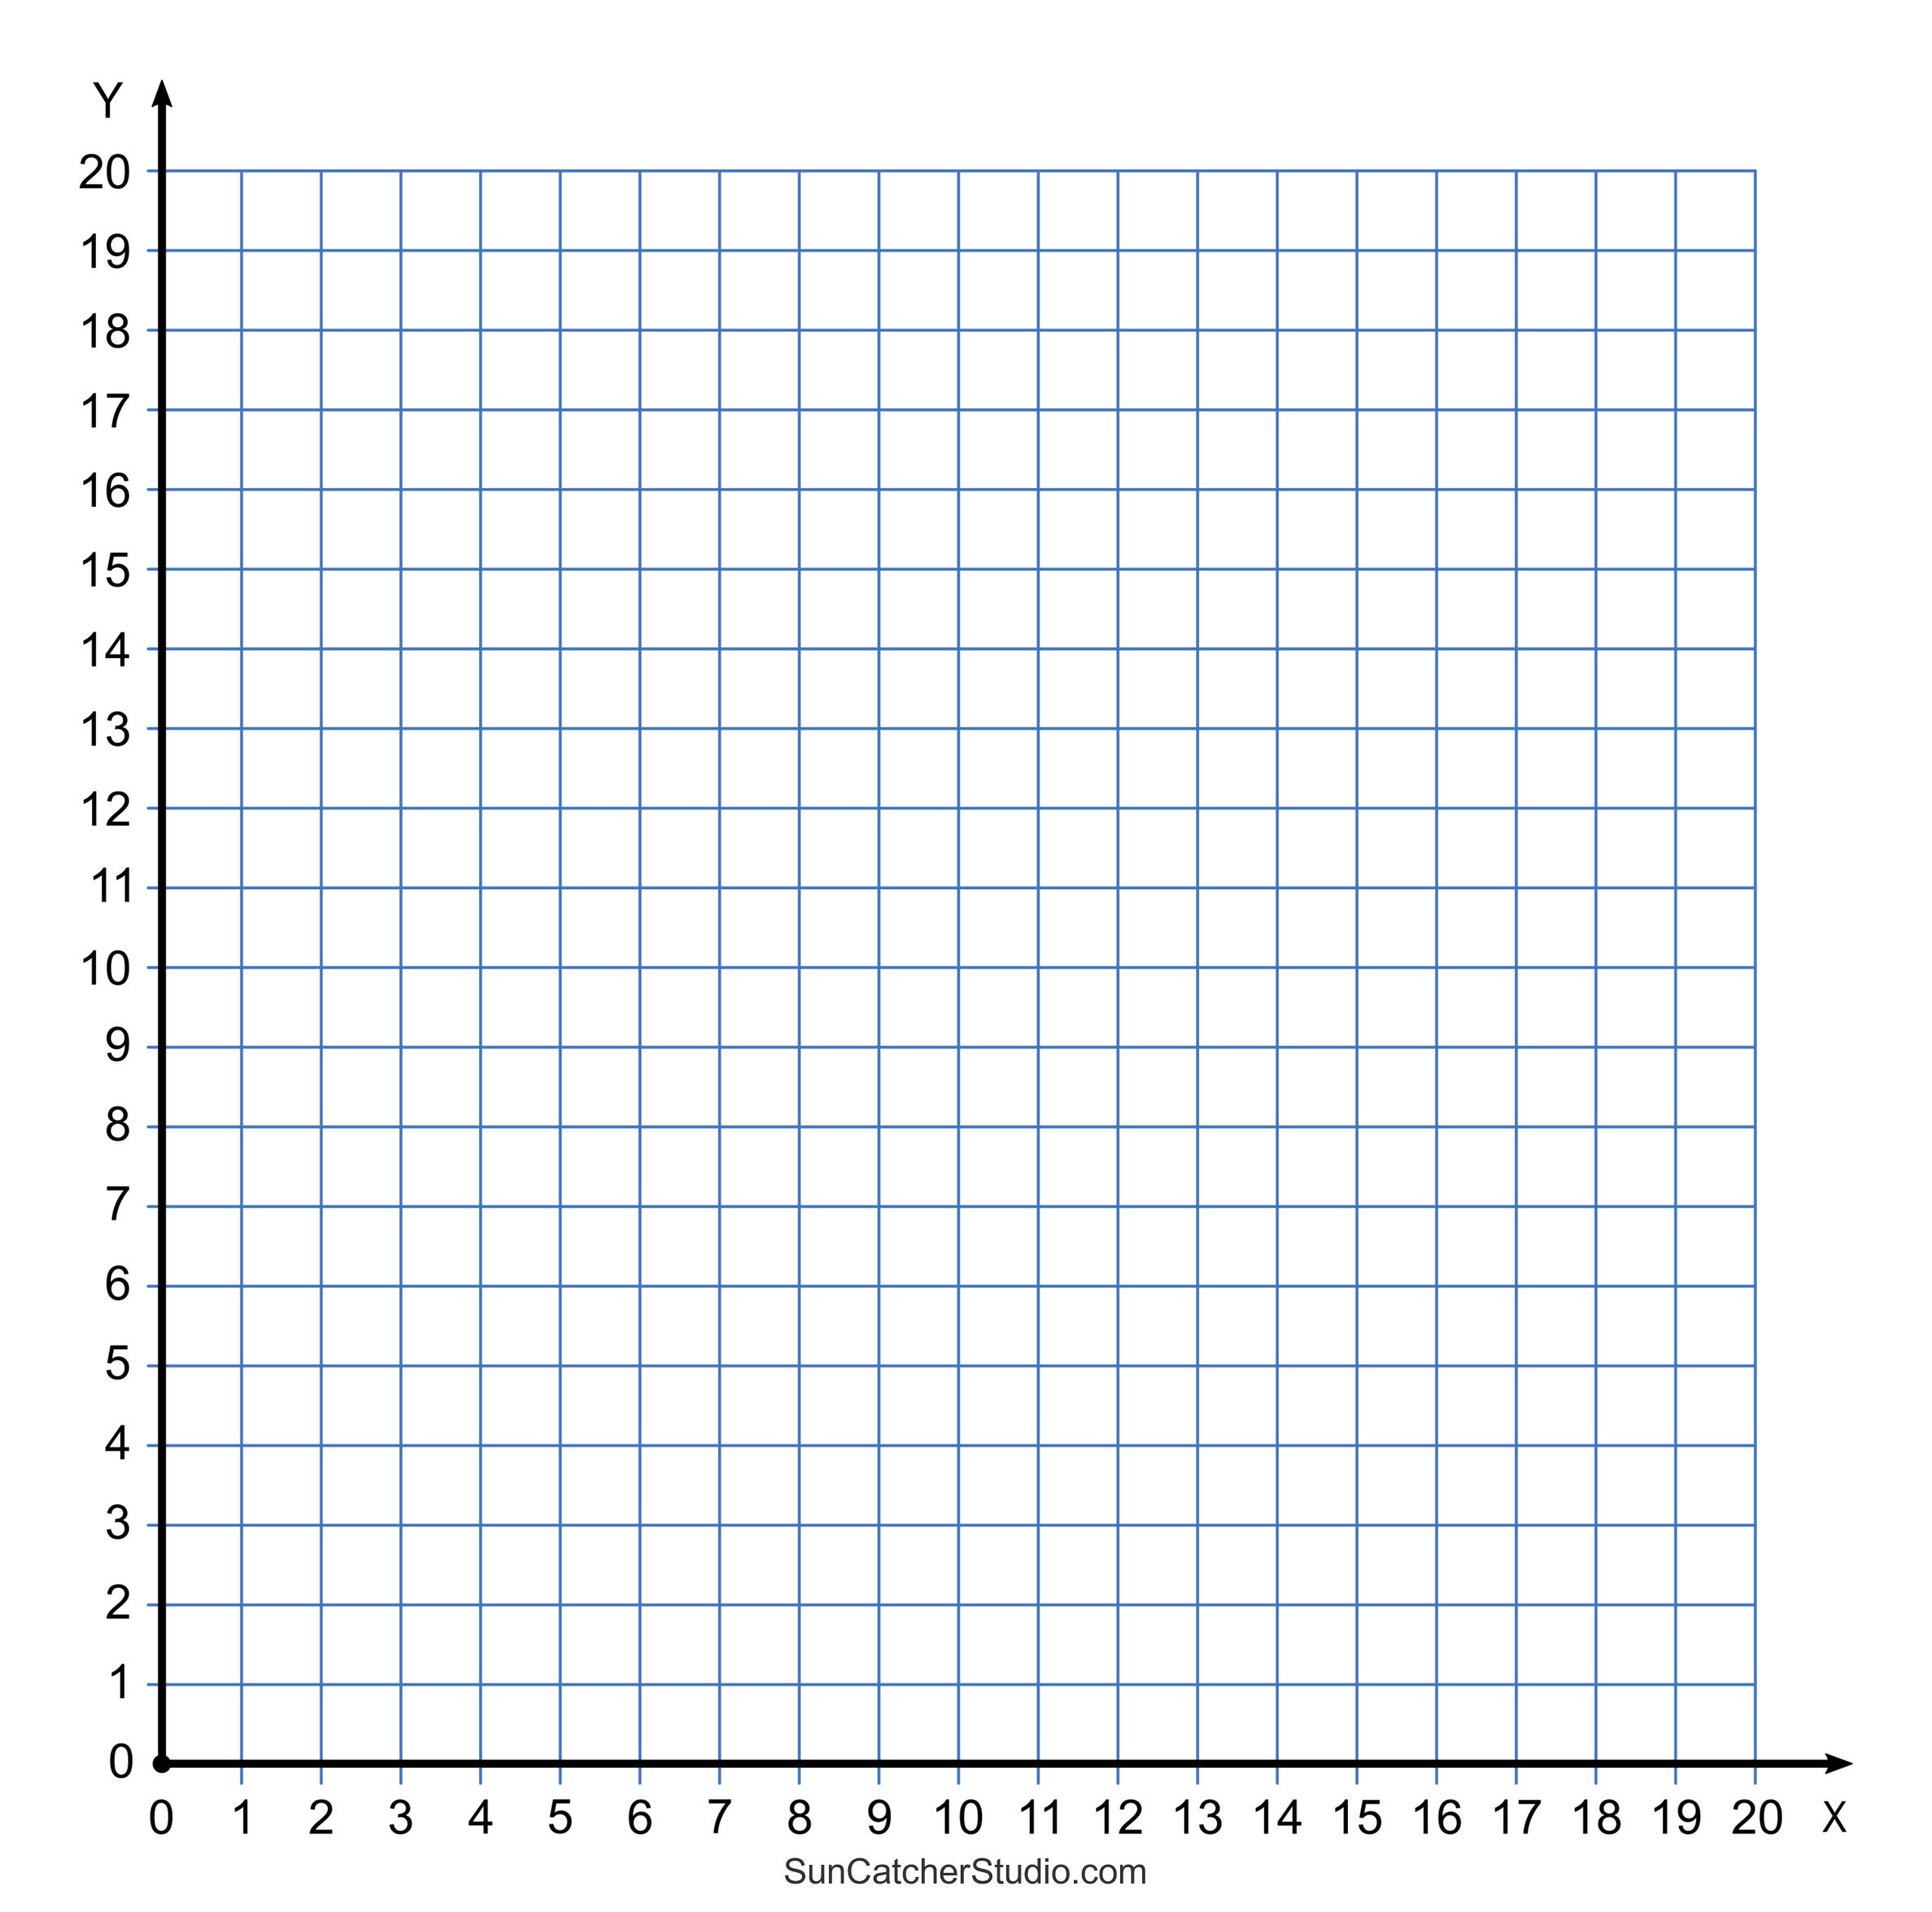 coordinate graph quadrant 1